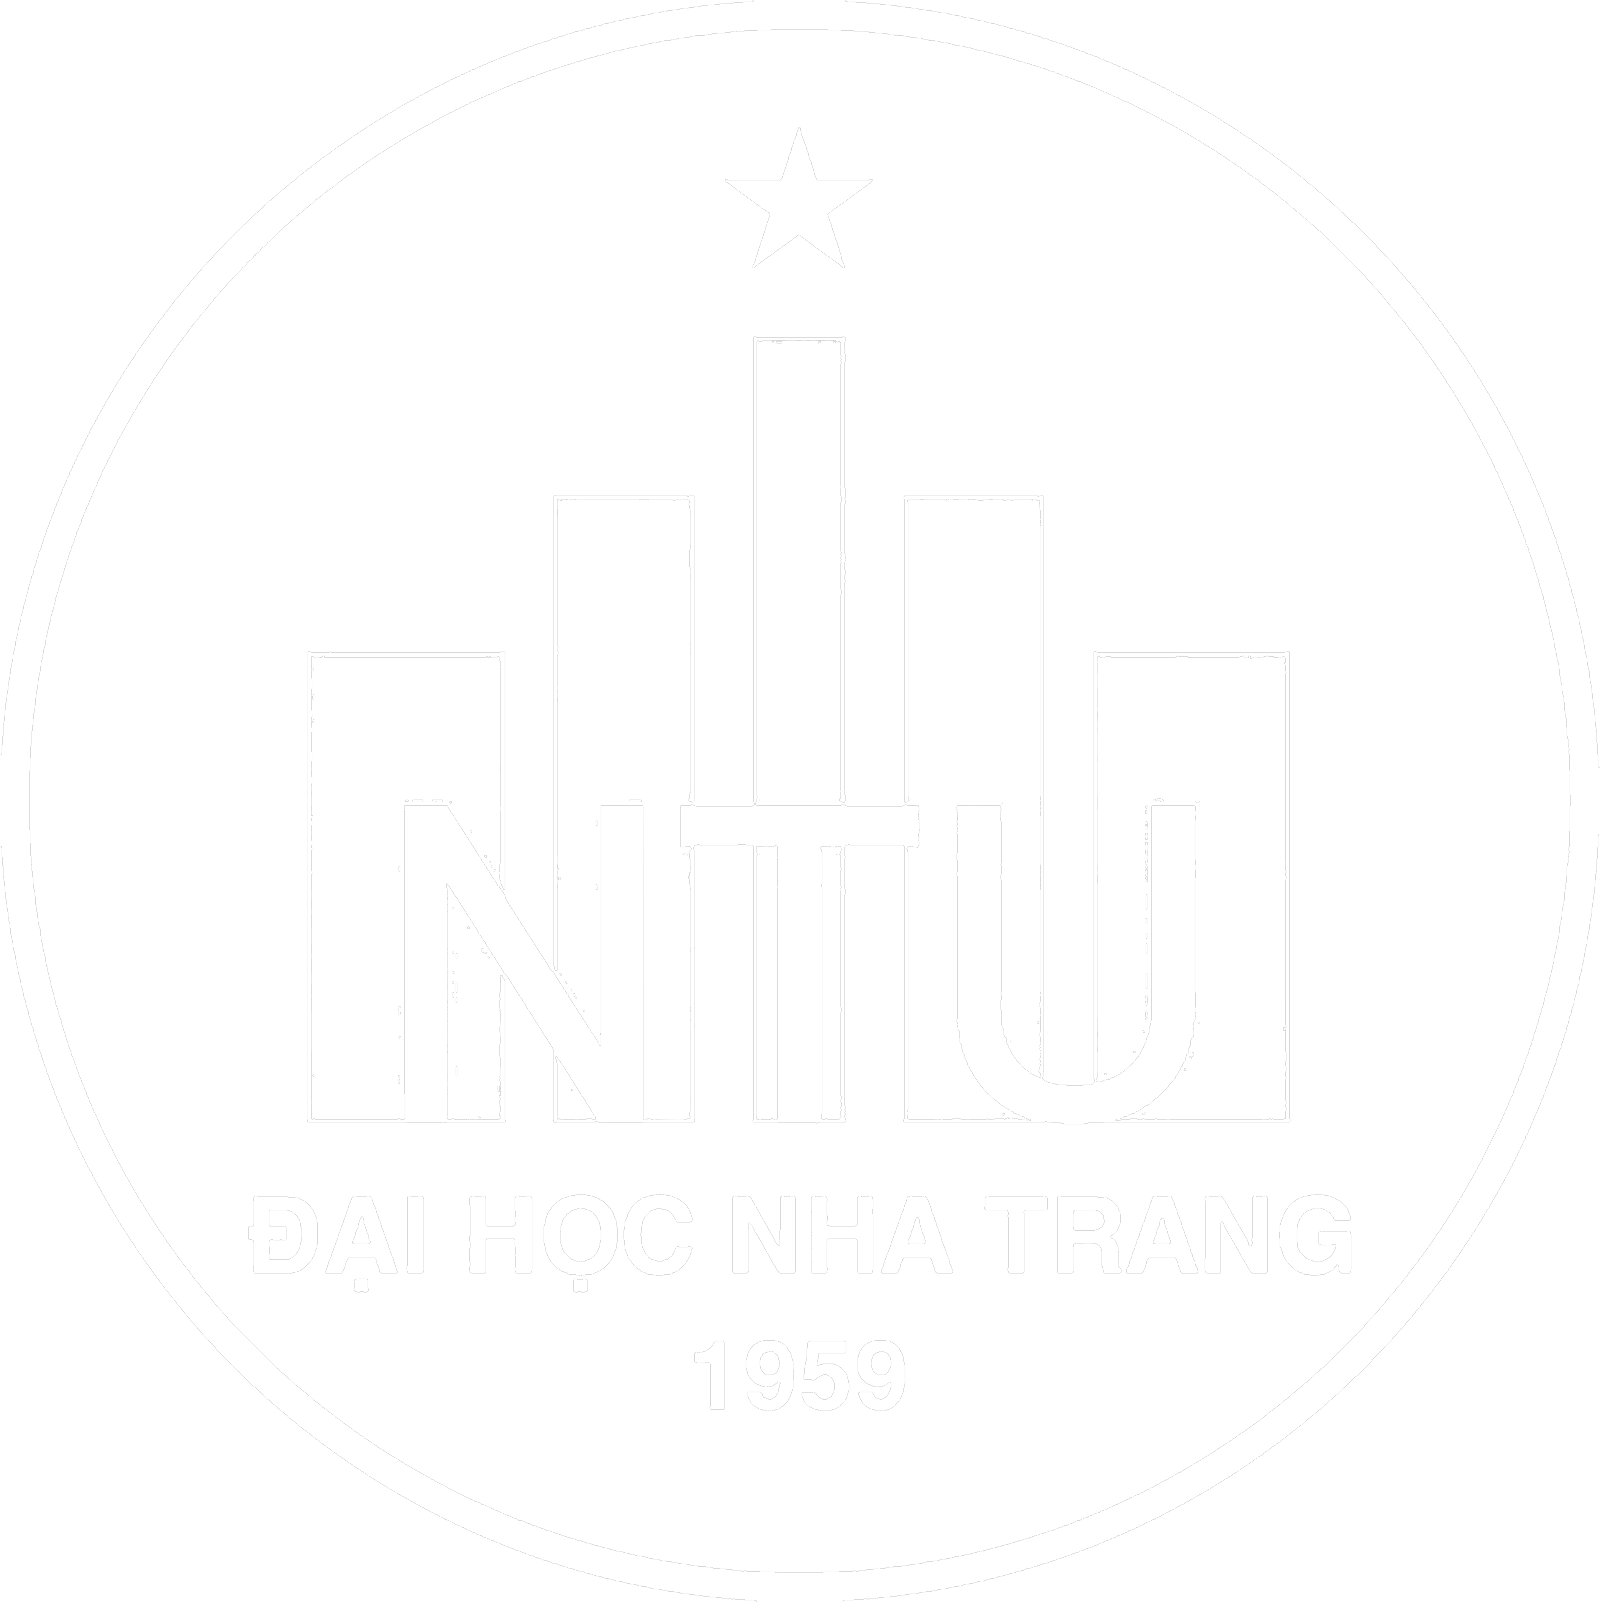 Nha Trang